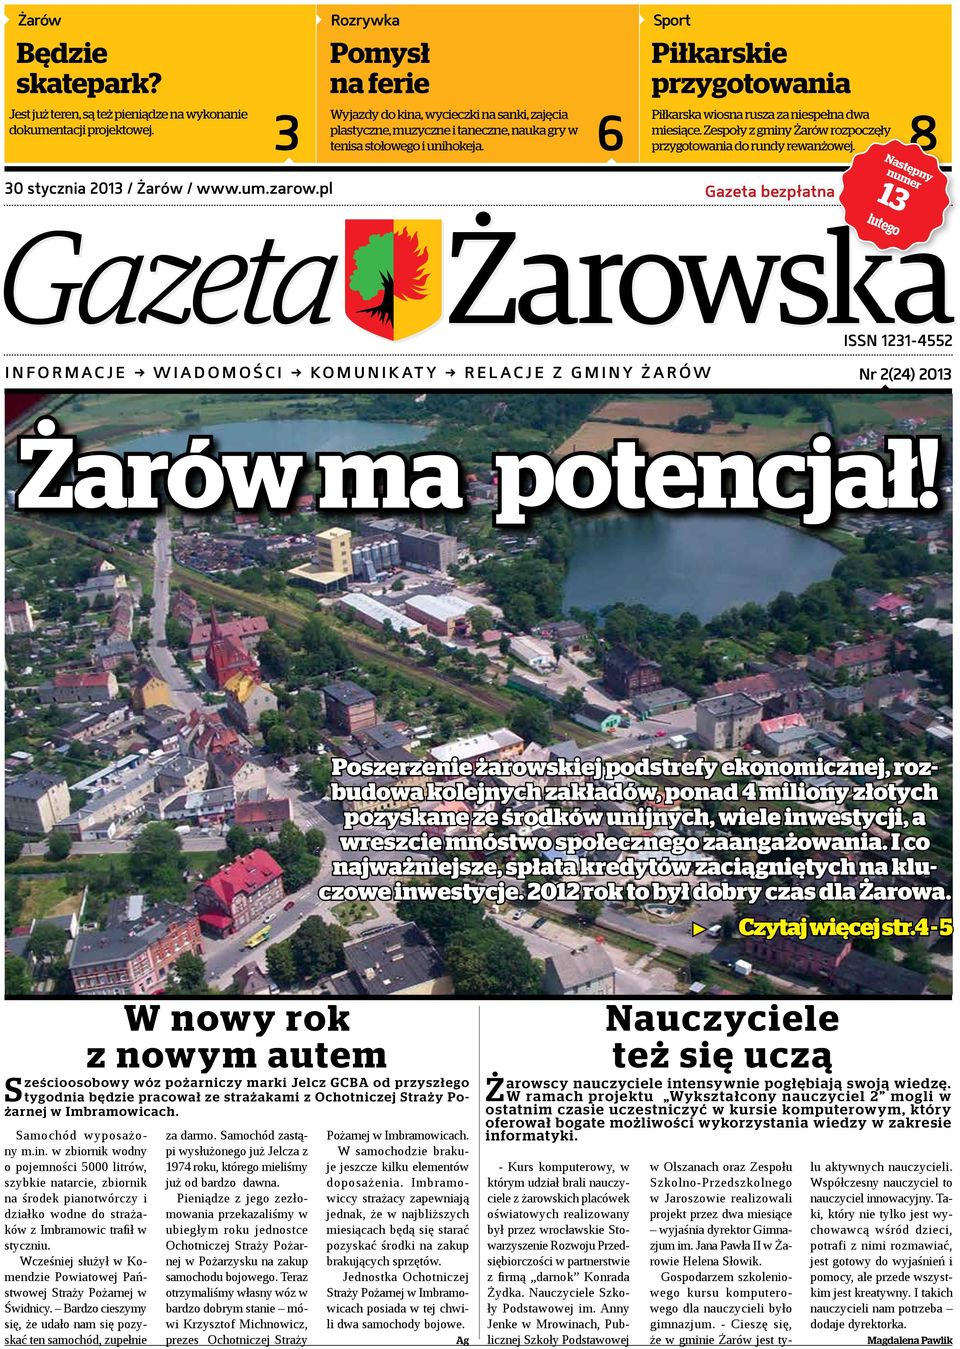 miesiące. Zespoły z gminy Żarów rozpoczęły 8 tenisa stołowego i unihokeja. przygotowania do rundy rewanżowej.